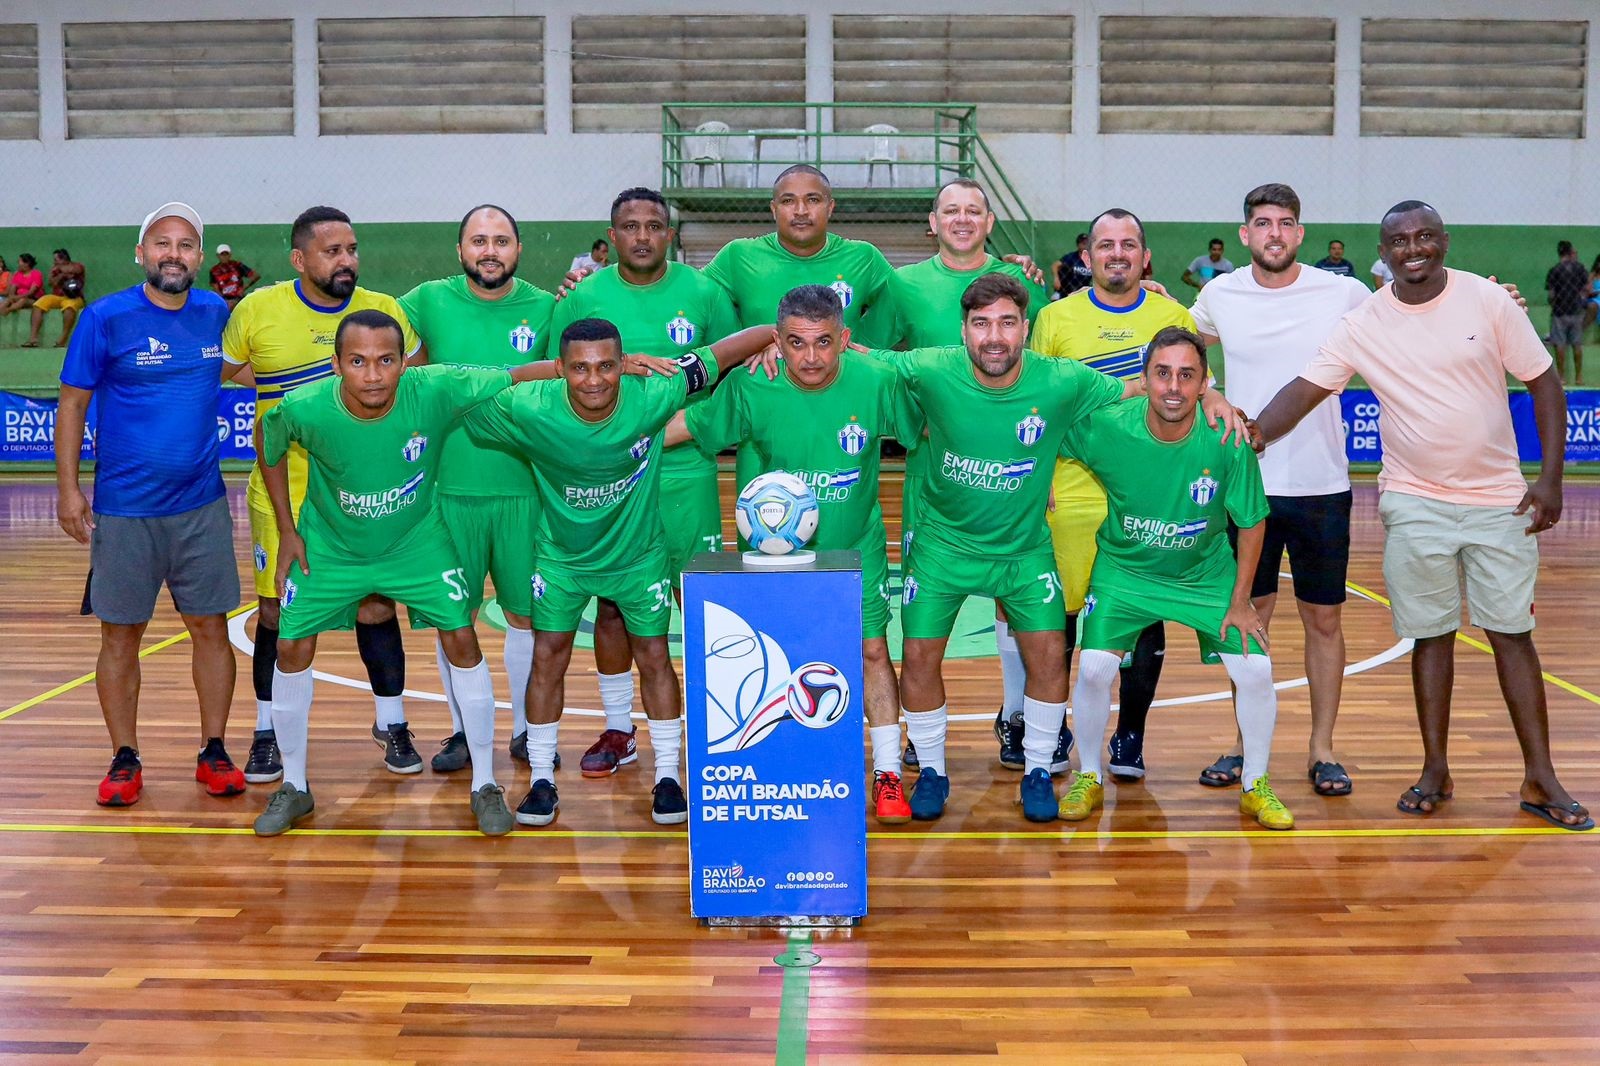 Davi Brandão em registro com uma das equipes participantes da Copa Davi Brandão de Futsal Adulto